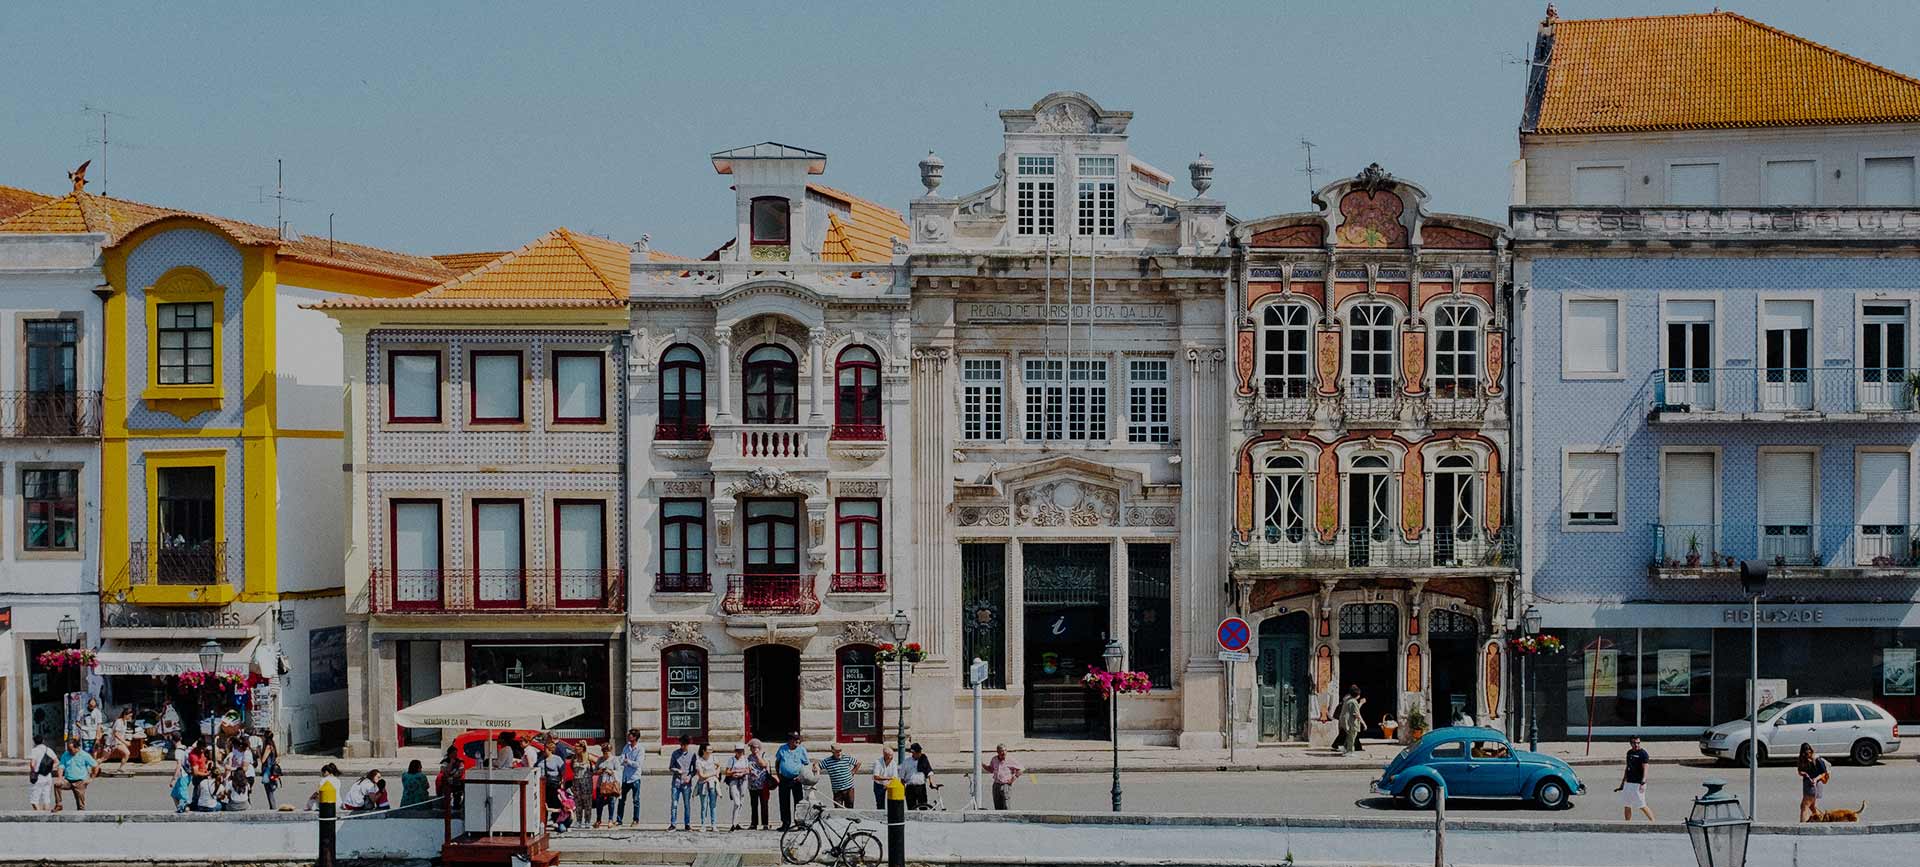 Queres viver em Portugal? 5 coisas a saber!